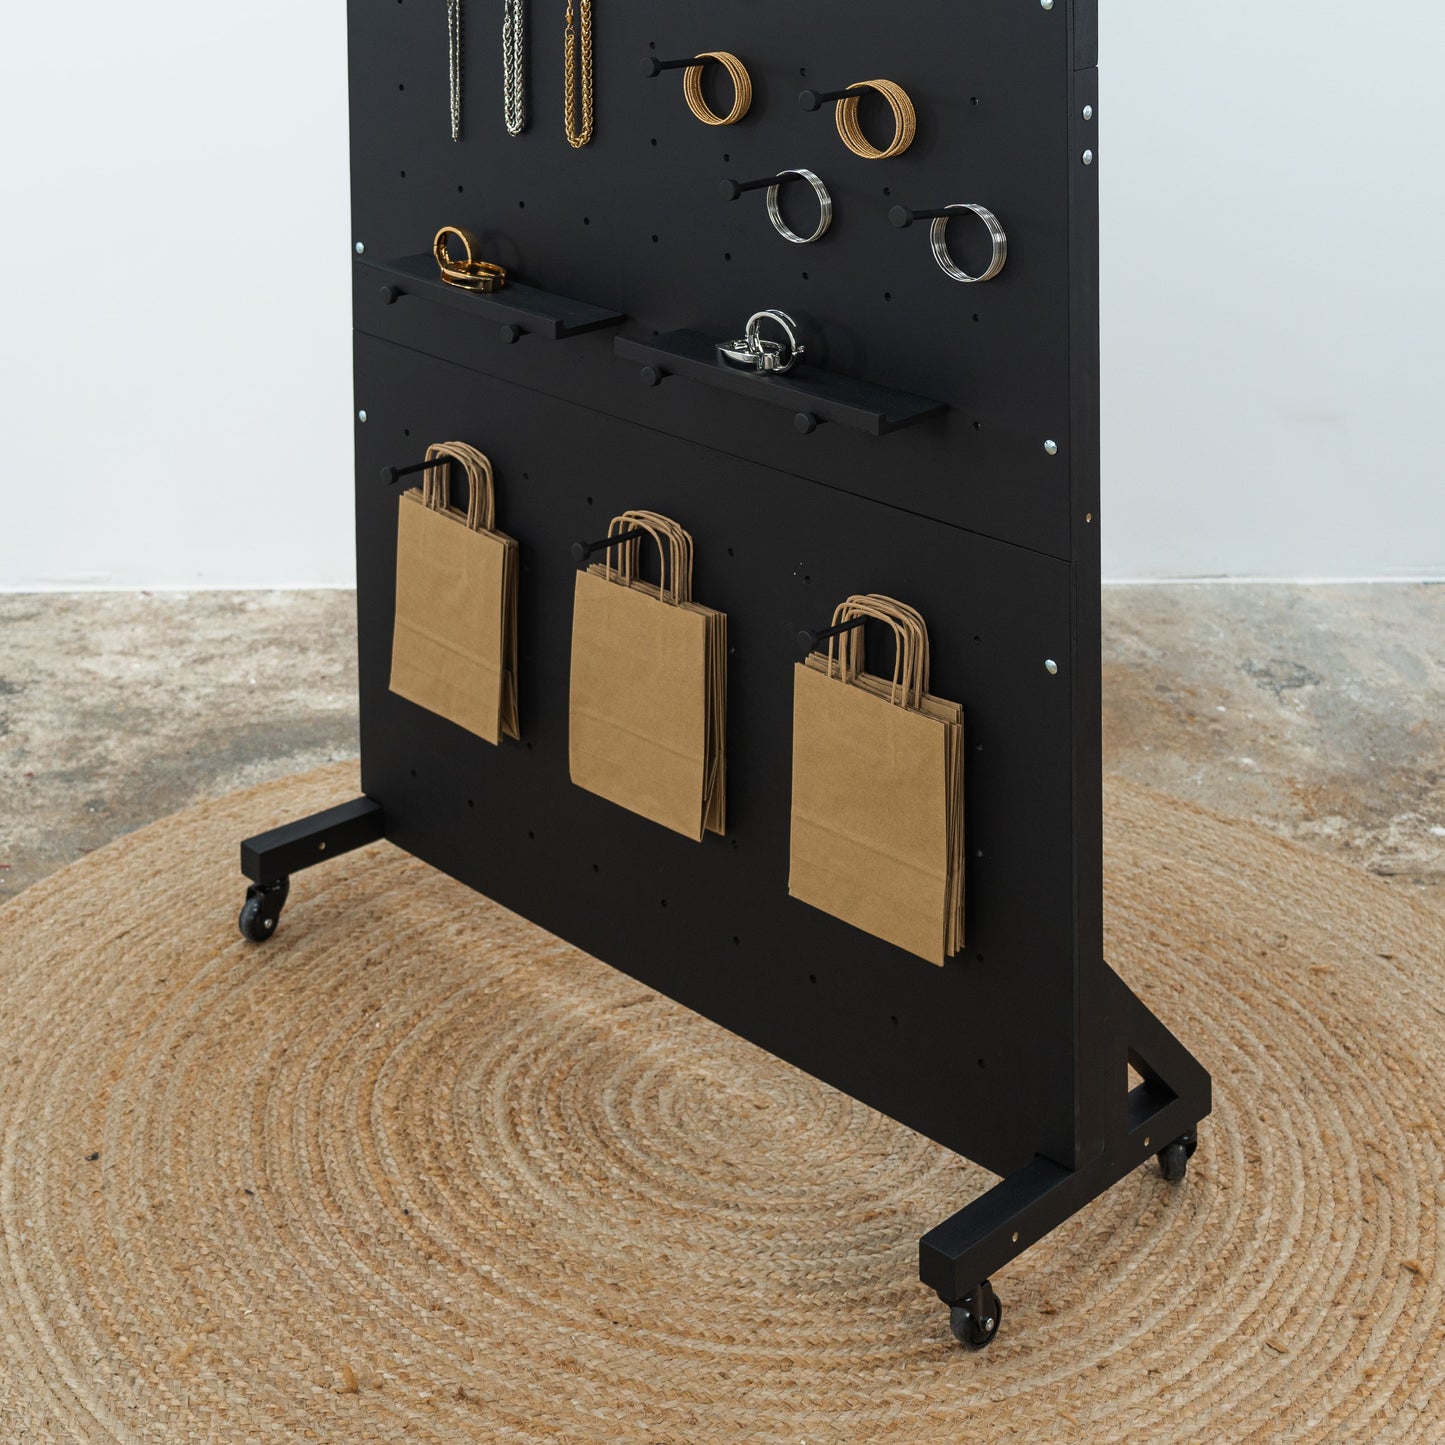 Standhintergrund – Set mit 2 Stecktafeln VP-05-W-BL-2 in schwarzer Farbe für Schmuck und Accessoires, auf Rollen, zusammenklappbar für den Einsatz auf Messen